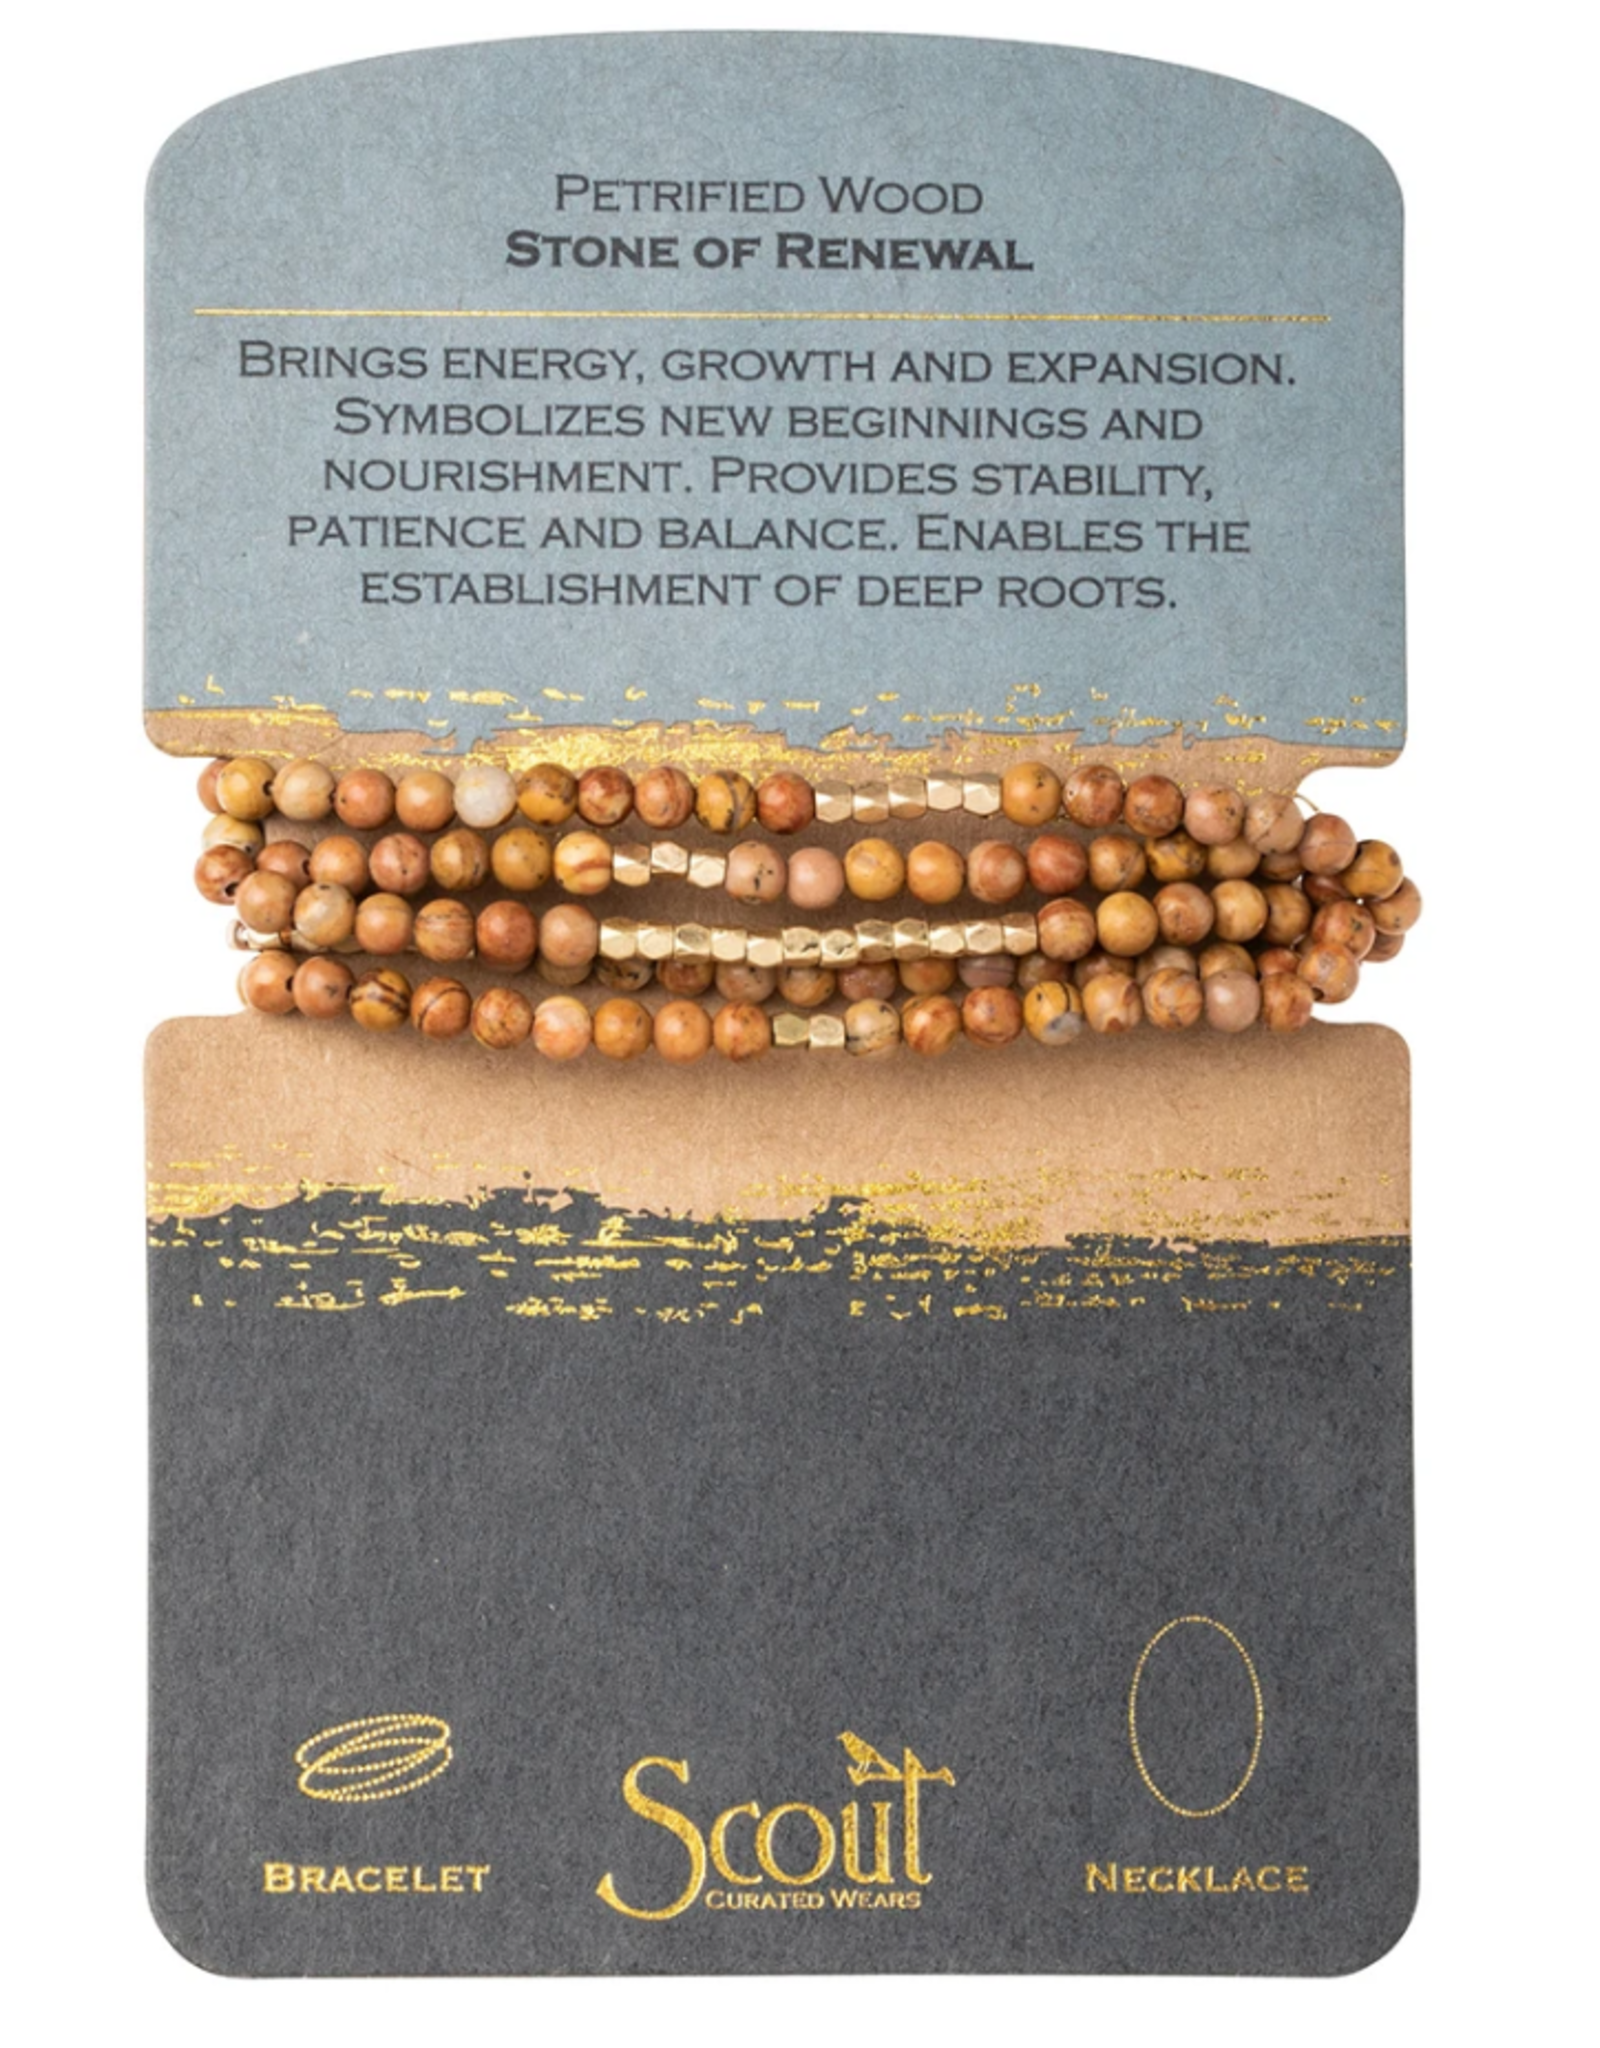 Bracelet Necklace Stone of Renewal Petrified Wood